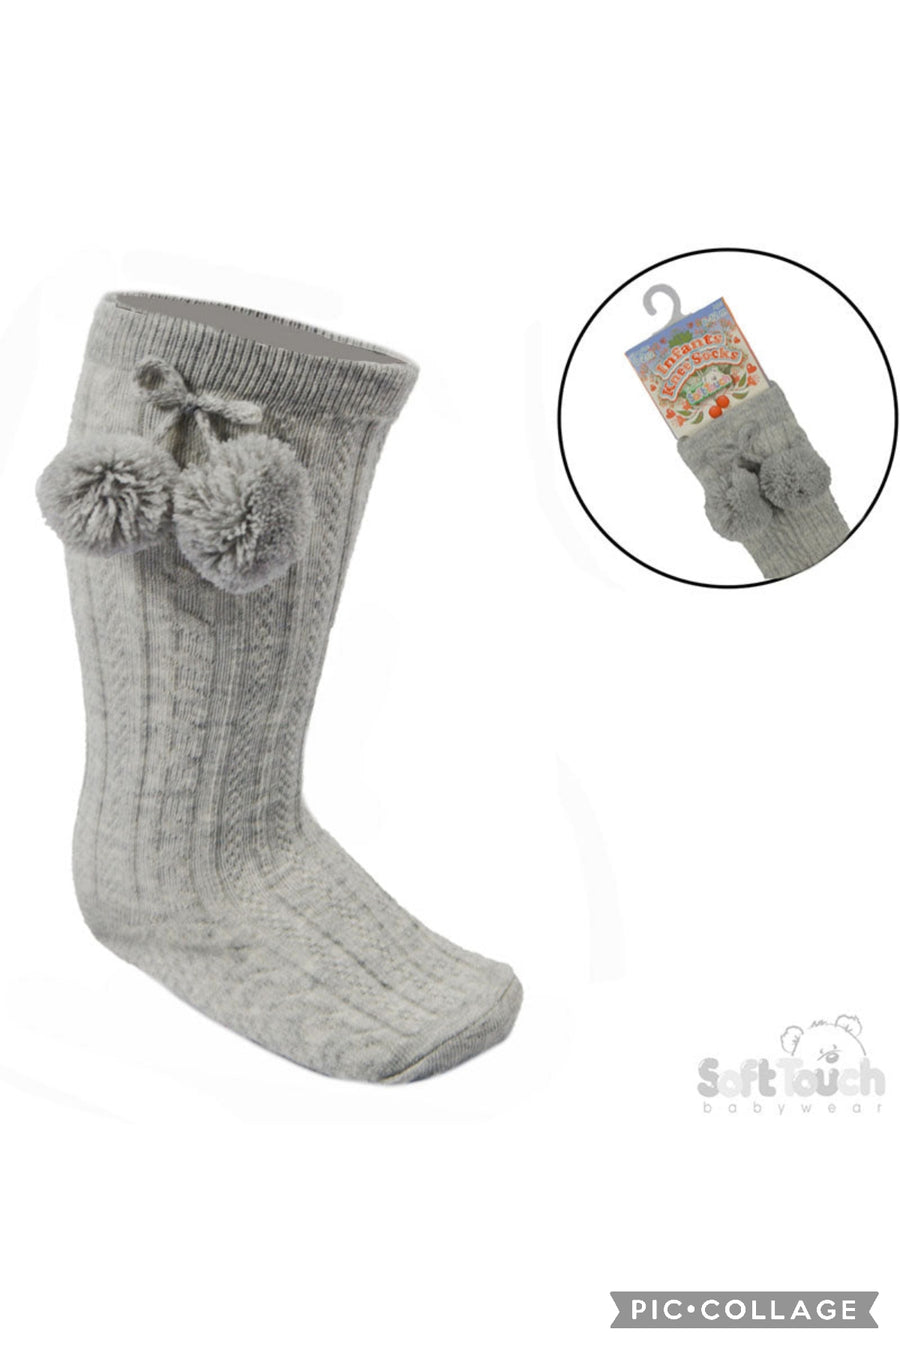 Baby Knee Socks With Pom Poms - Grey